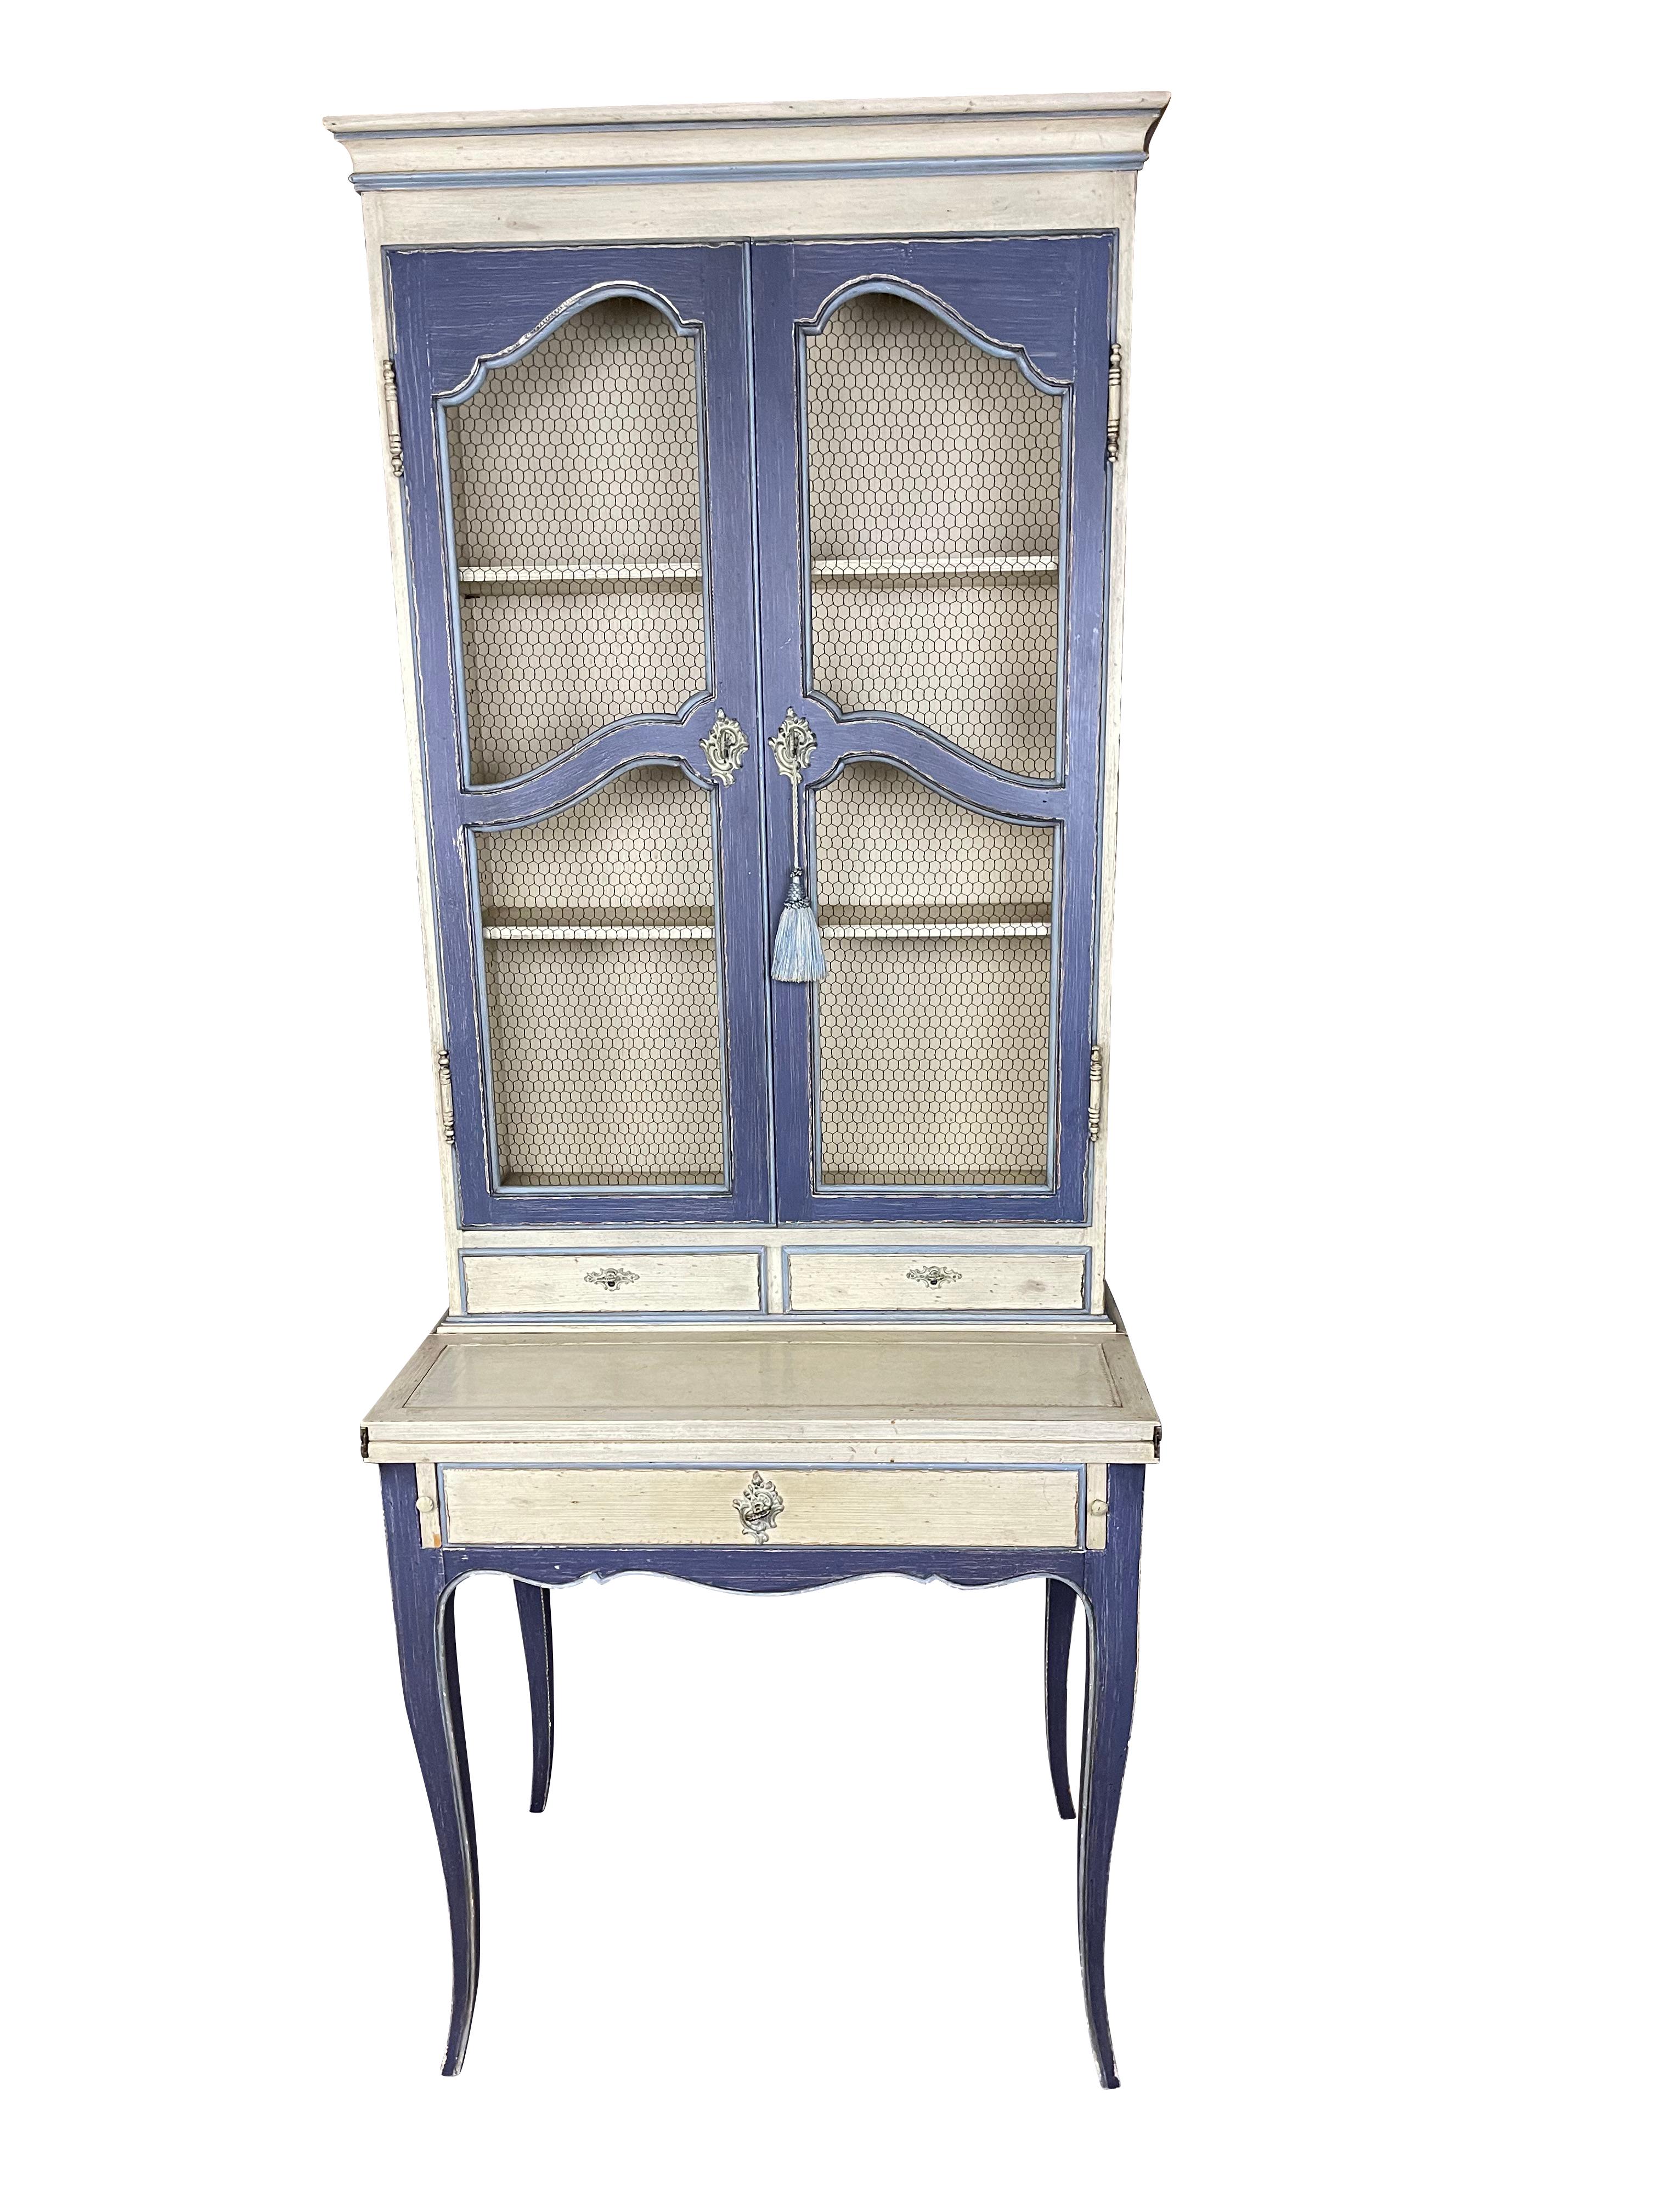 Handbemalter französischer Landhaus-/Provinzschreibtisch mit drahtverkleideten Bücherregalen, Schublade und ausziehbarem Schreibtisch, der sich auf 18 Zoll öffnet.  Der Schreibtisch ist in einem schönen französischen Blau und cremefarbener Farbe mit